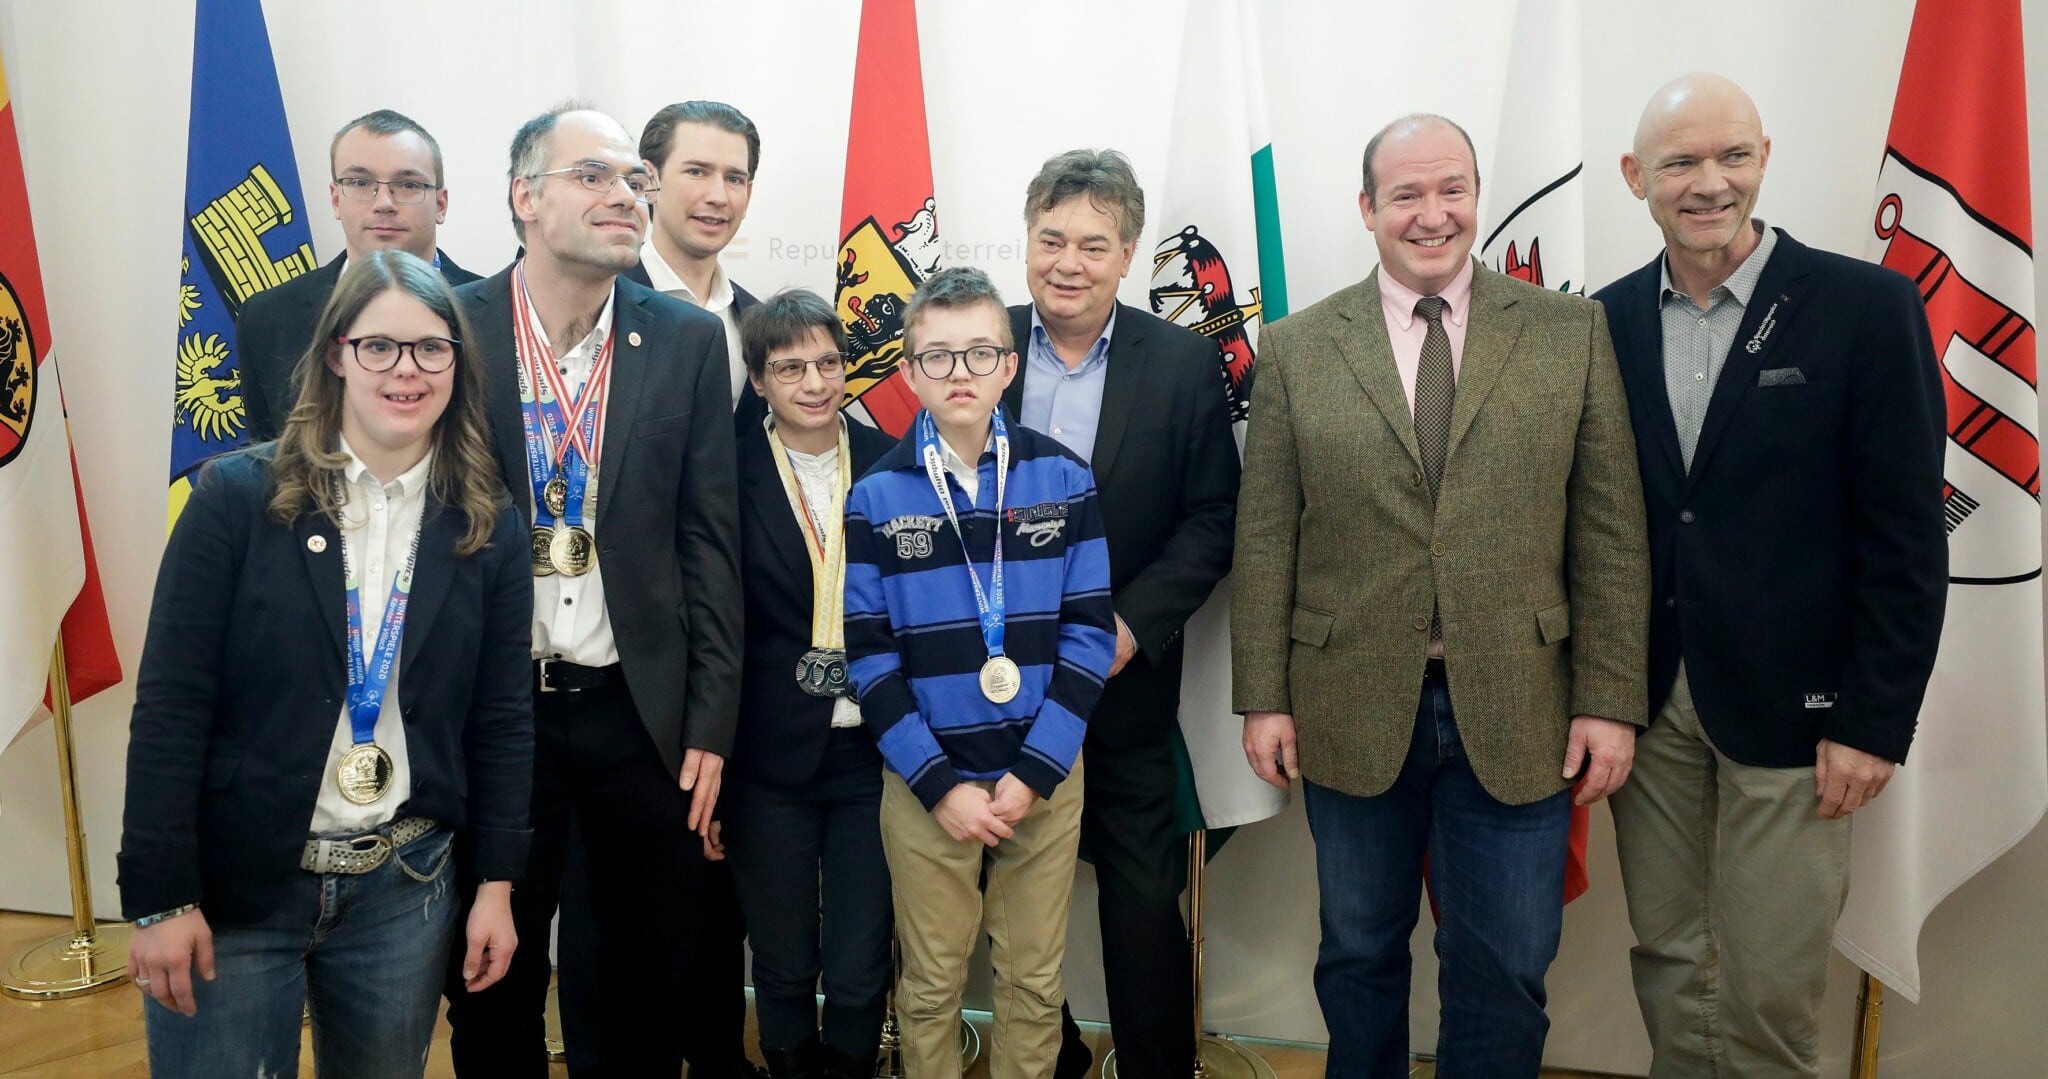 Am 9. März 2020 lud Bundeskanzler Sebastian Kurz gemeinsam mit Vizekanzler Werner Kogler zu einem Empfang für die Österreichischen Teilnehmerinnen und Teilnehmer der Special Olympics Winterspiele 2020.